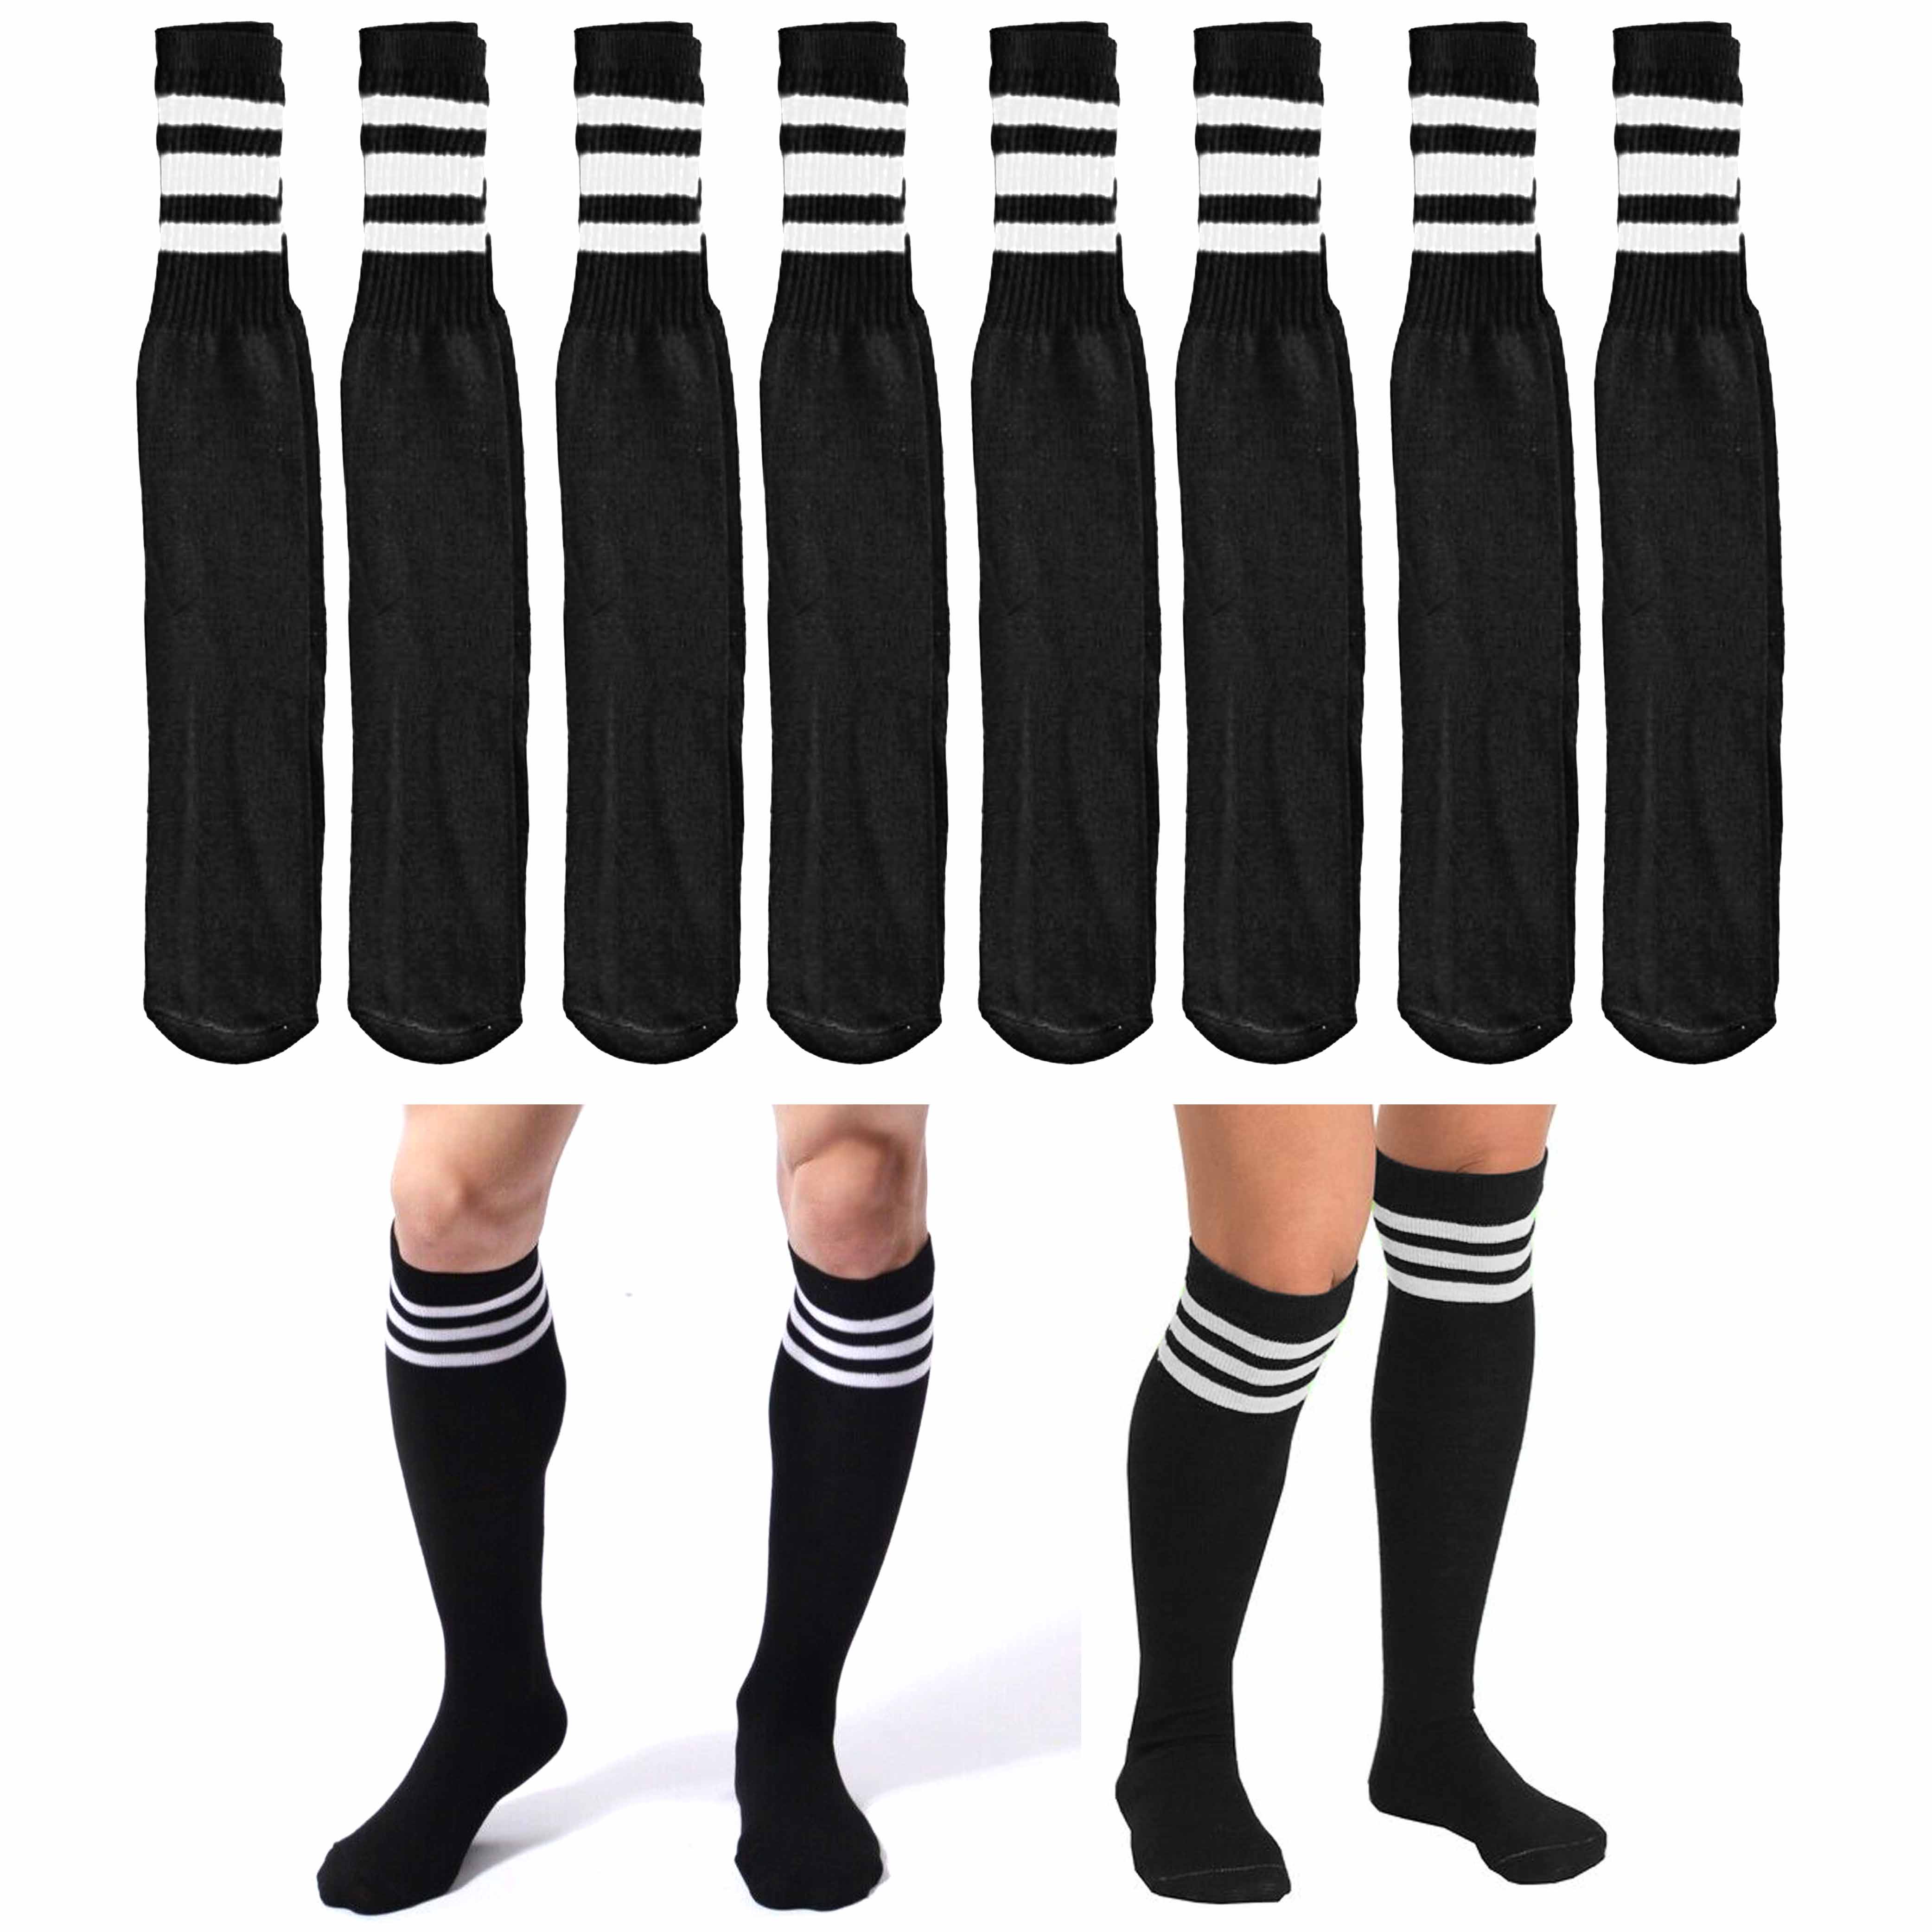 5 Pair Long Athletic Football / Soccer Socks, Sport Tube Socks, Over the  Knee High Cotton Socks,Over Calf Socks